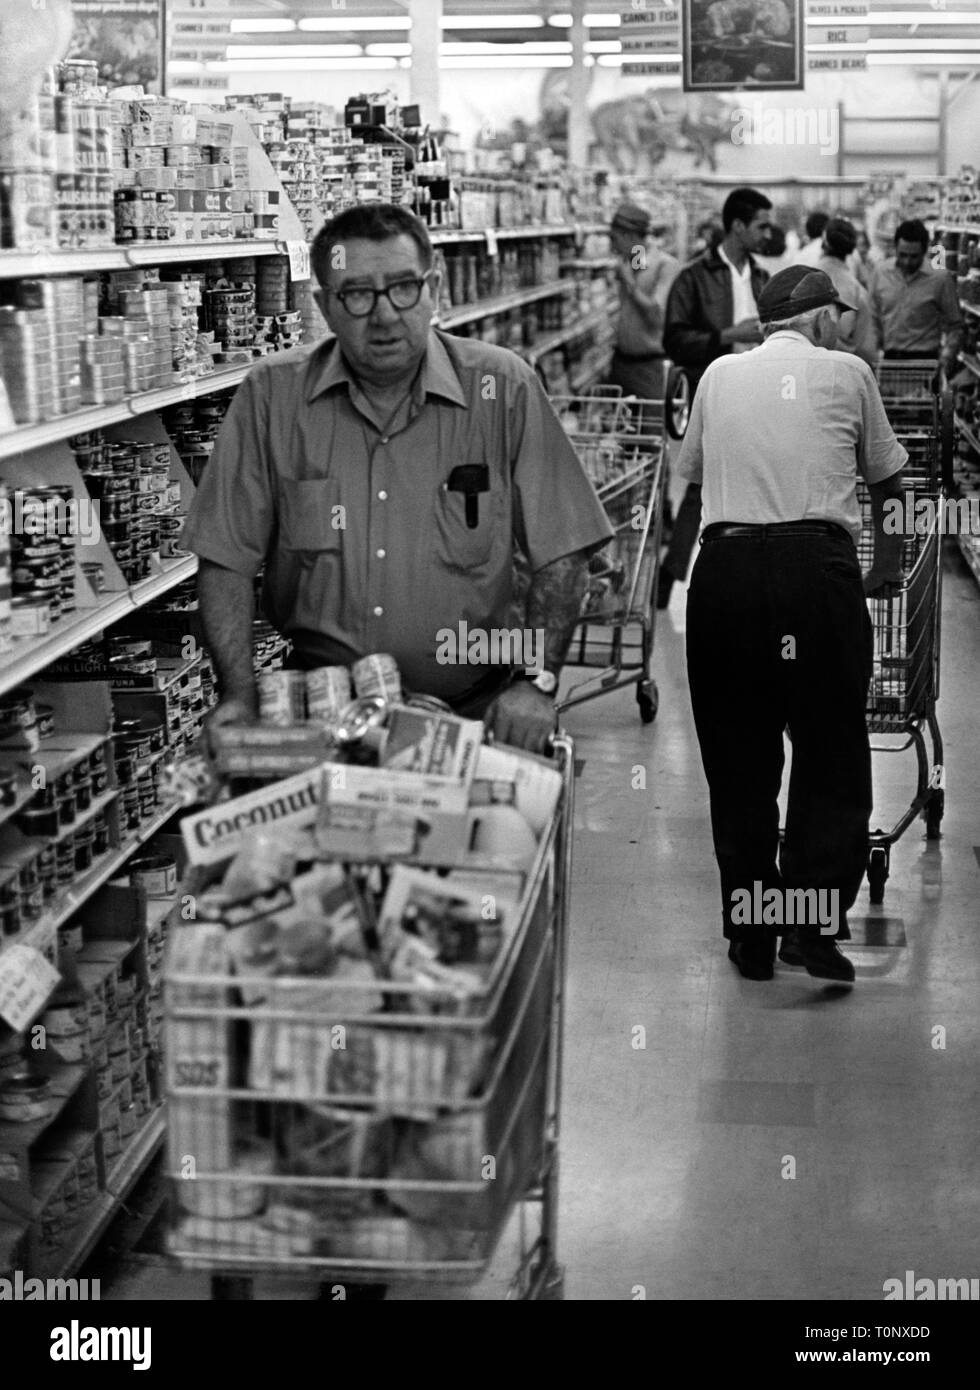 América, dentro de un supermercado, 1970 Foto de stock